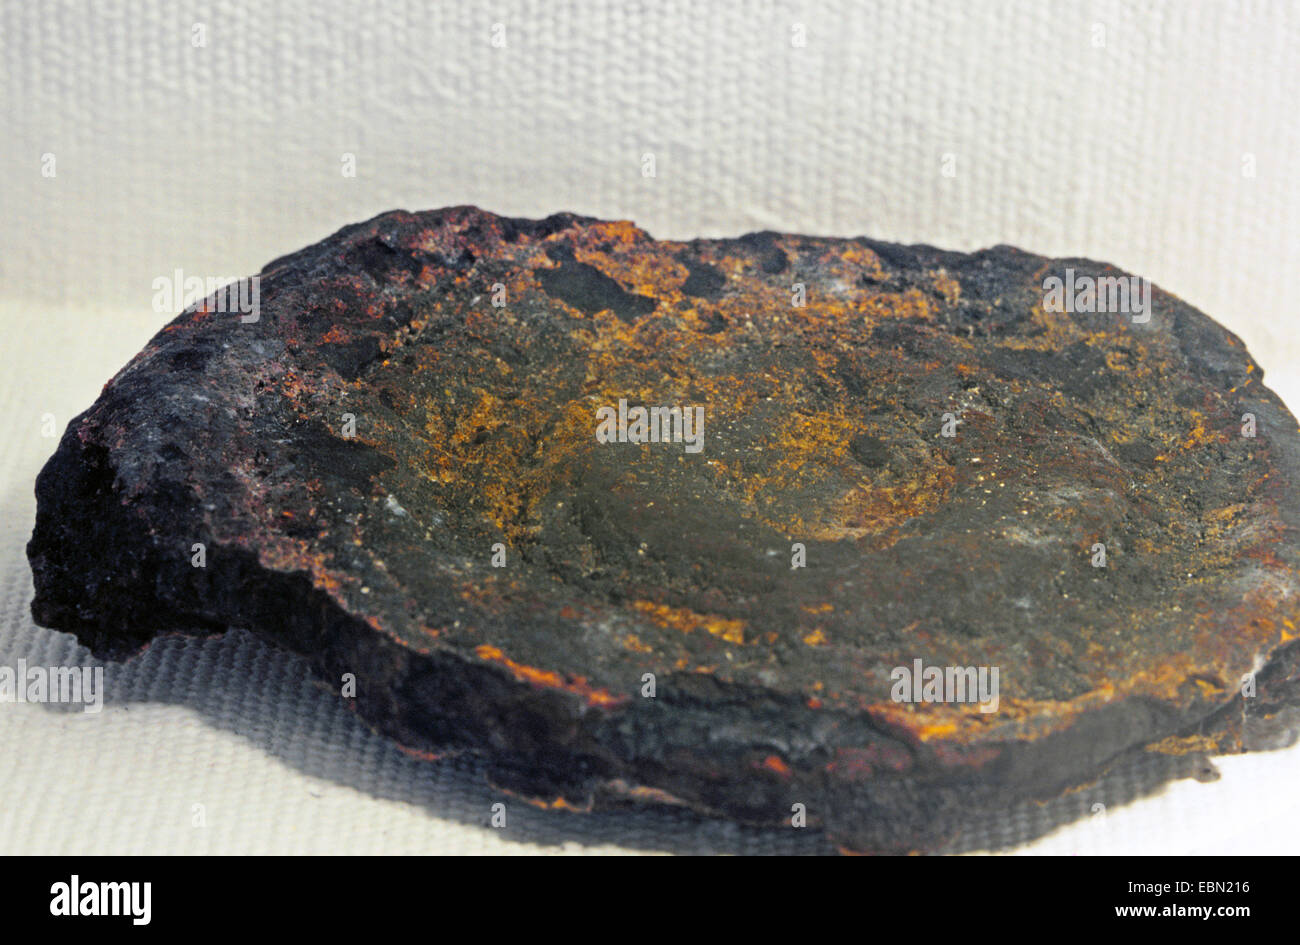 manganese nodule and crest, USA, Virginia Stock Photo